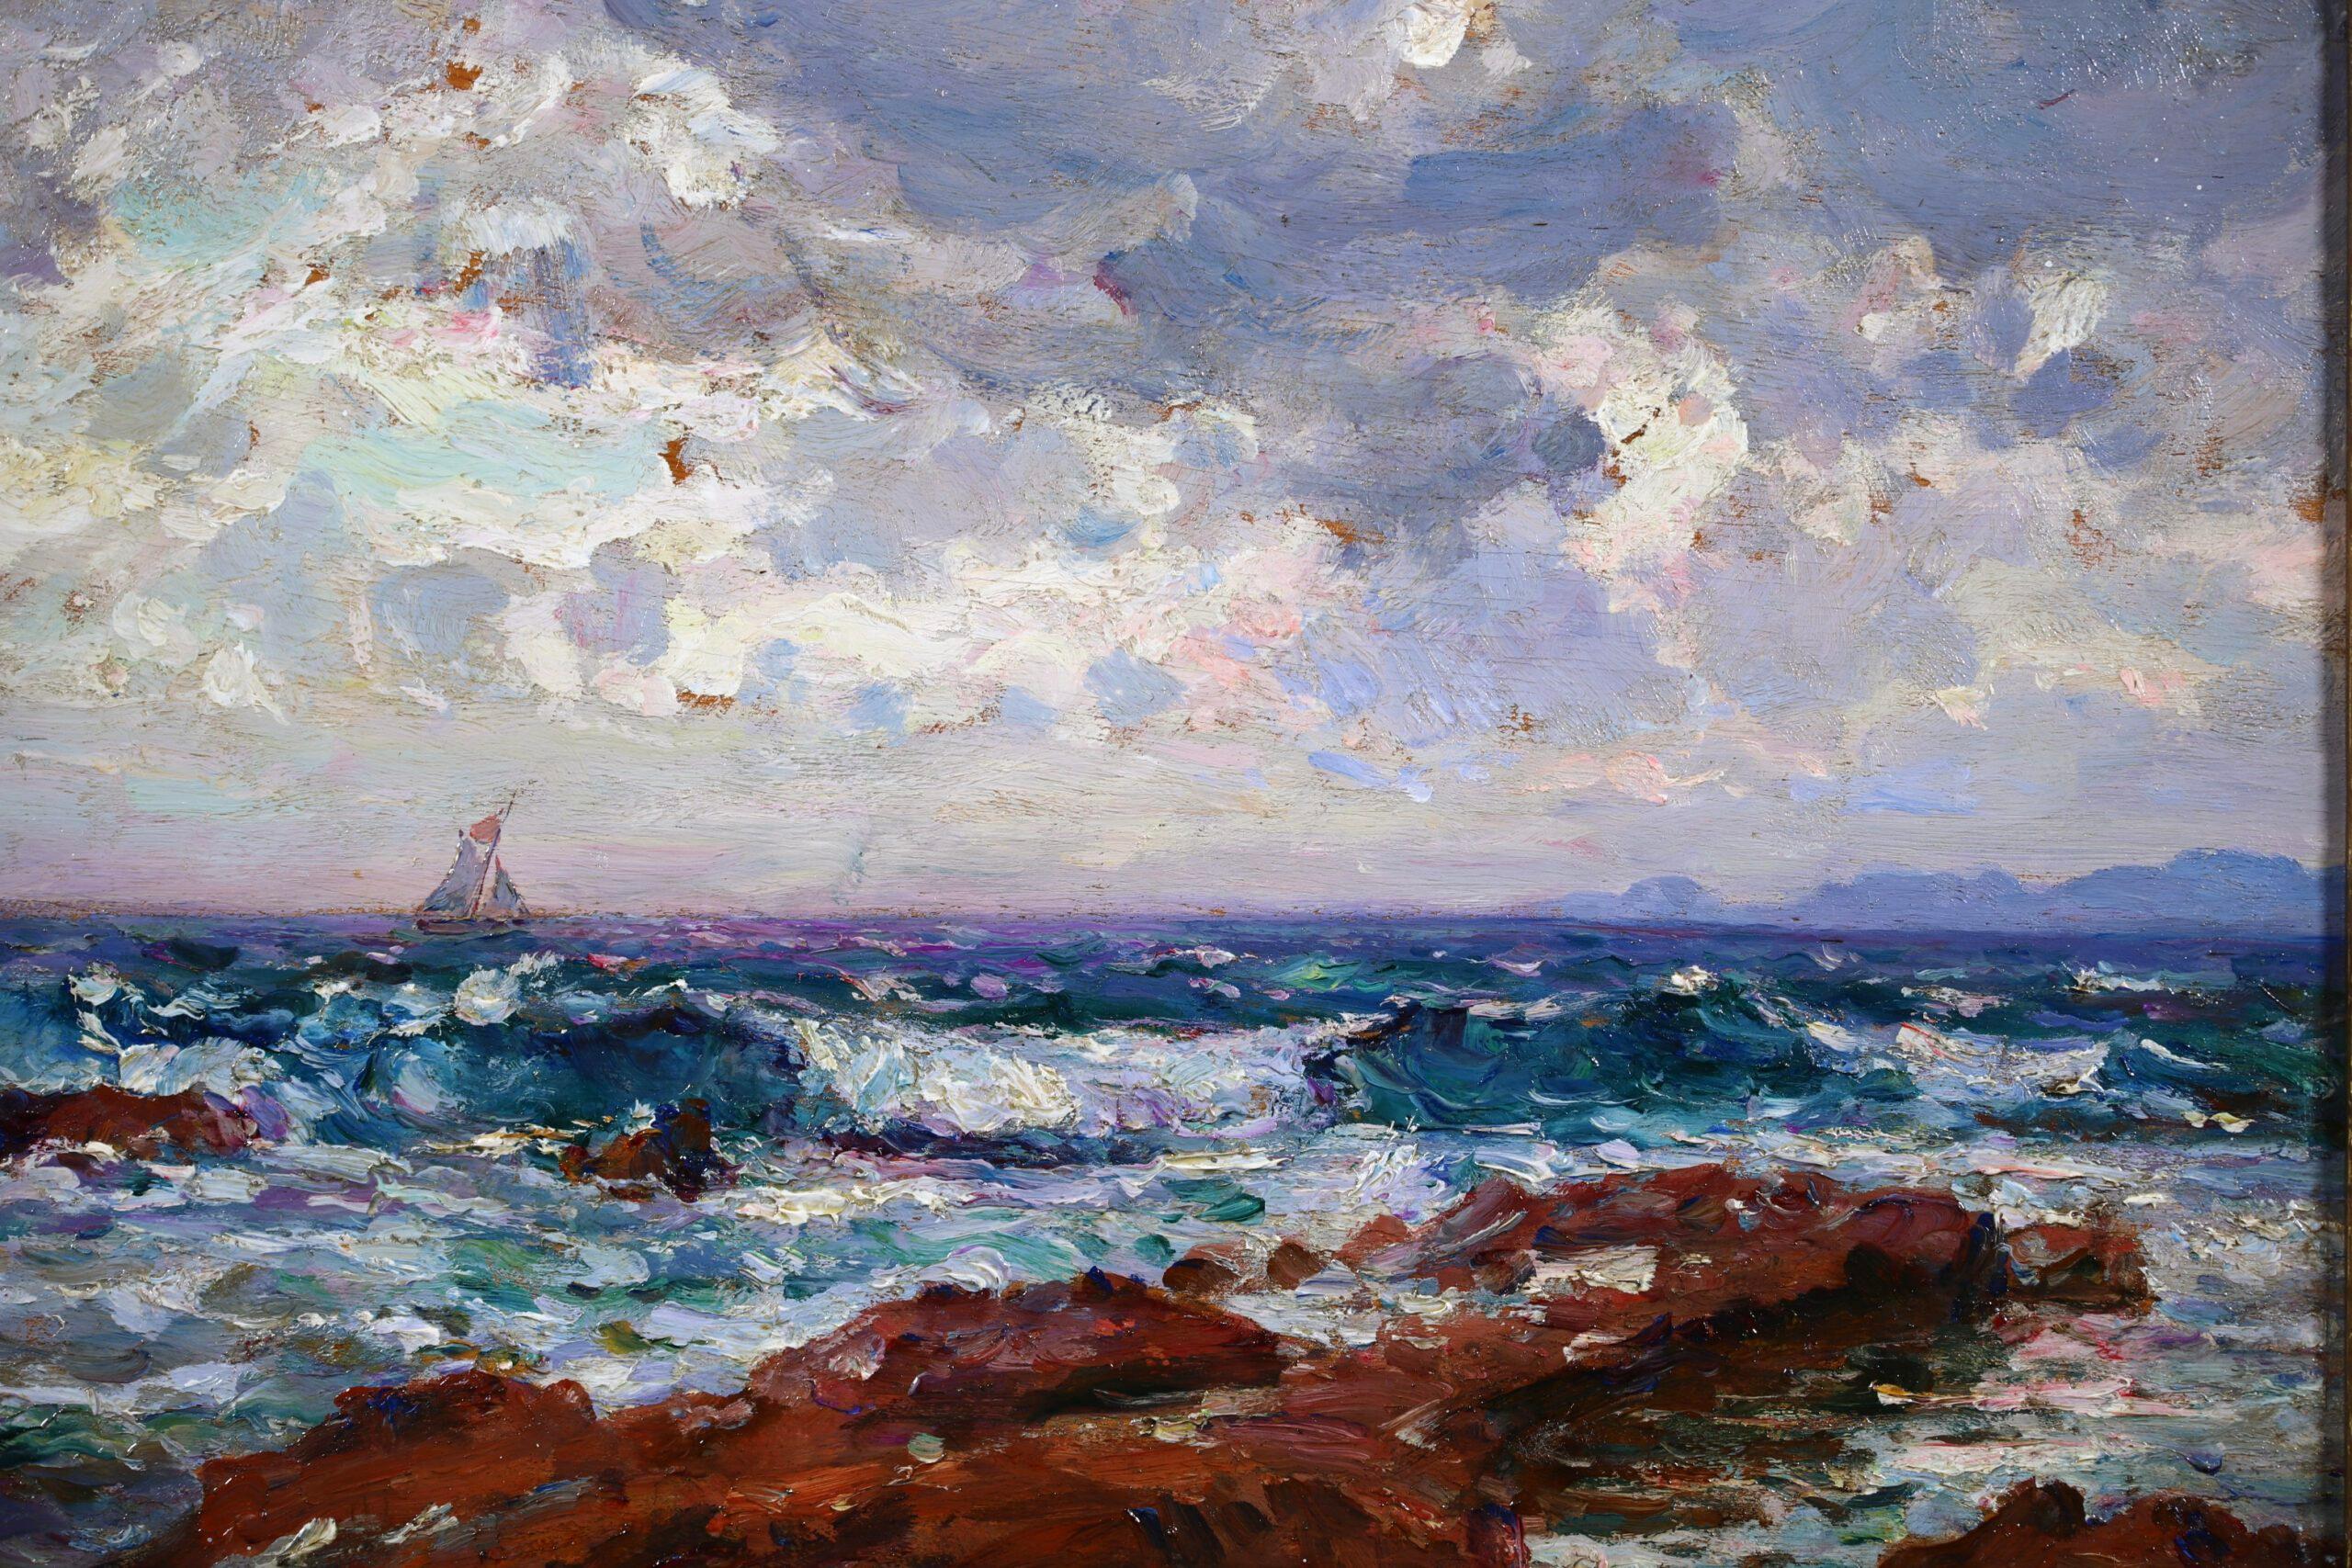 Huile sur panneau signée vers 1920 par le peintre post impressionniste français Adolphe Louis Gaussen. L'œuvre représente une vue de vagues se jetant en cascade sur un rivage rocheux. Un voilier navigue sous un ciel nuageux.

Signature :
Signé en